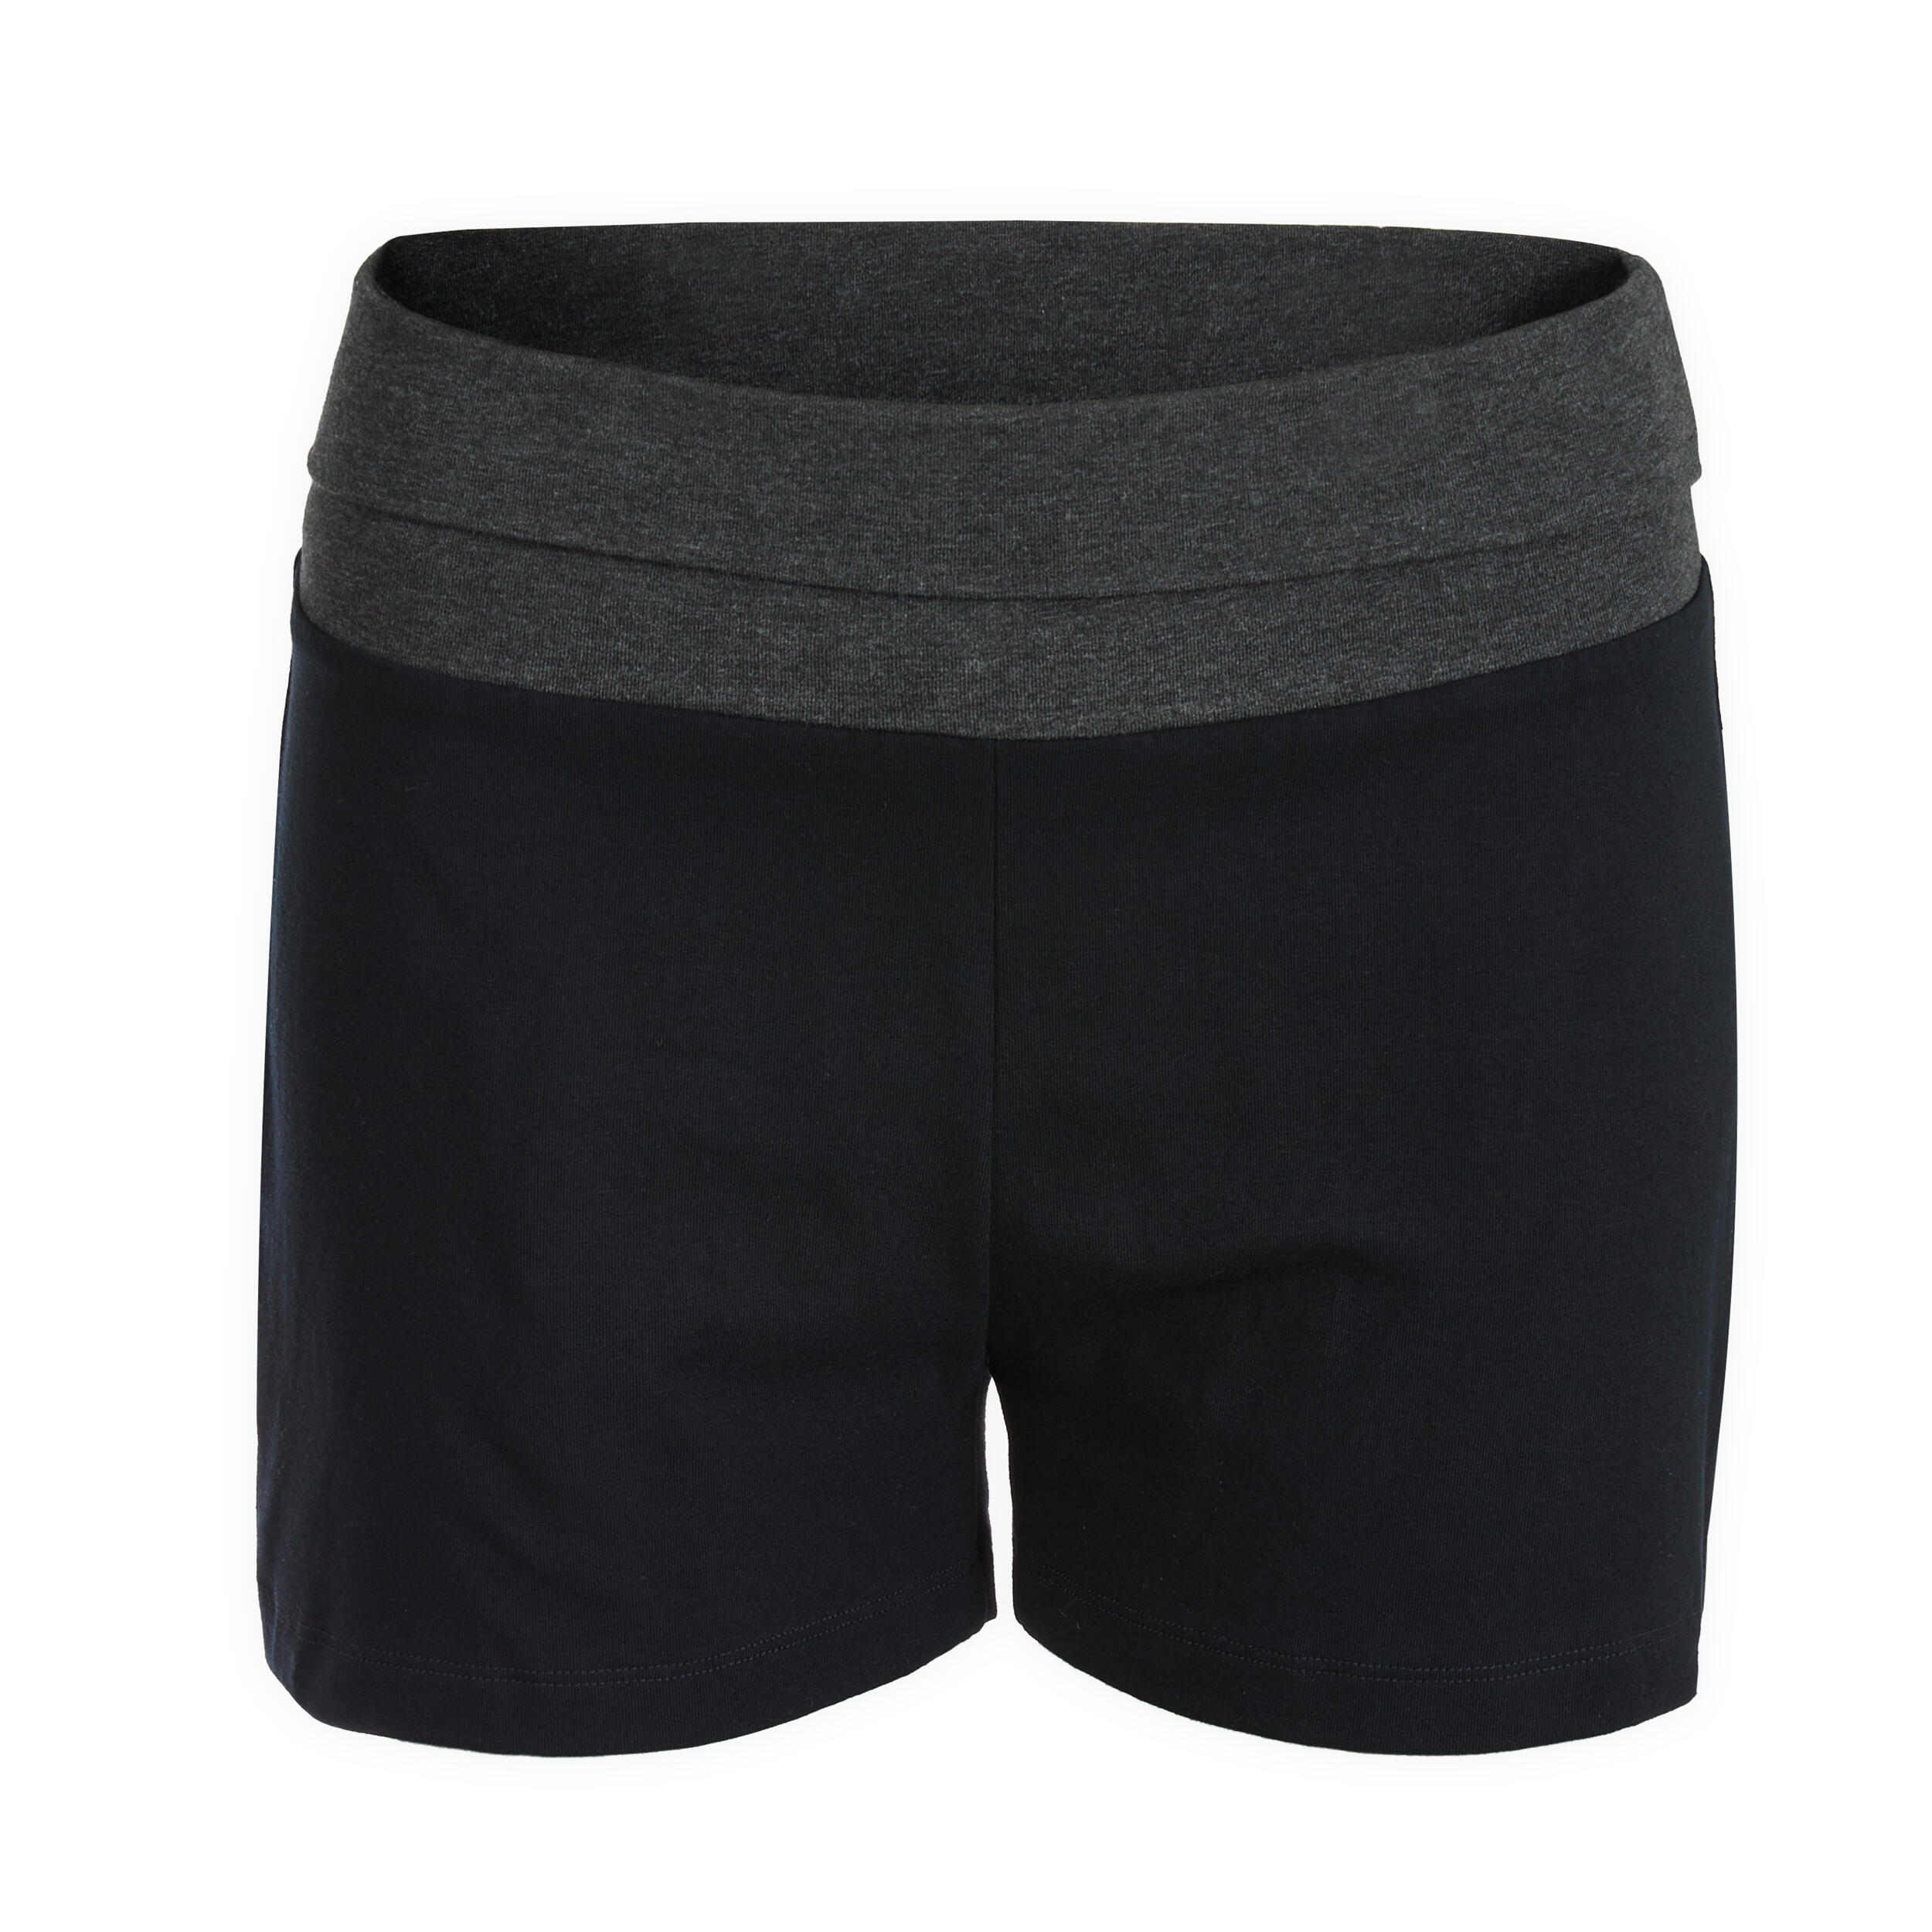 Women's Yoga Shorts Cotton Shorts Pants Pack of 2 - Black+black -  CC18CXGIZ6C Size Small